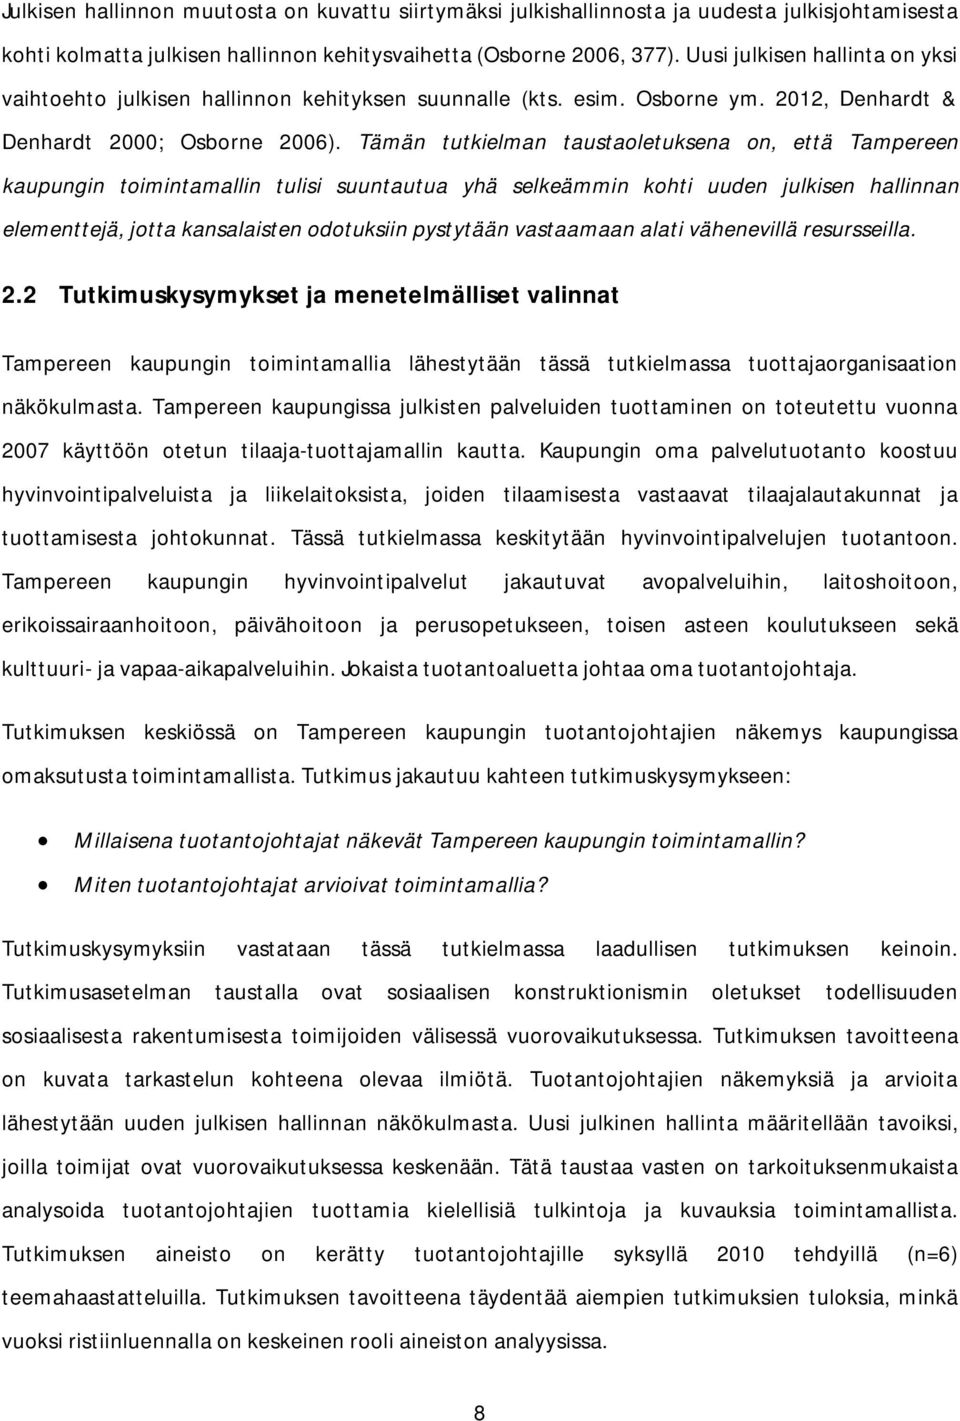 Tämän tutkielman taustaoletuksena on, että Tampereen kaupungin toimintamallin tulisi suuntautua yhä selkeämmin kohti uuden julkisen hallinnan elementtejä, jotta kansalaisten odotuksiin pystytään